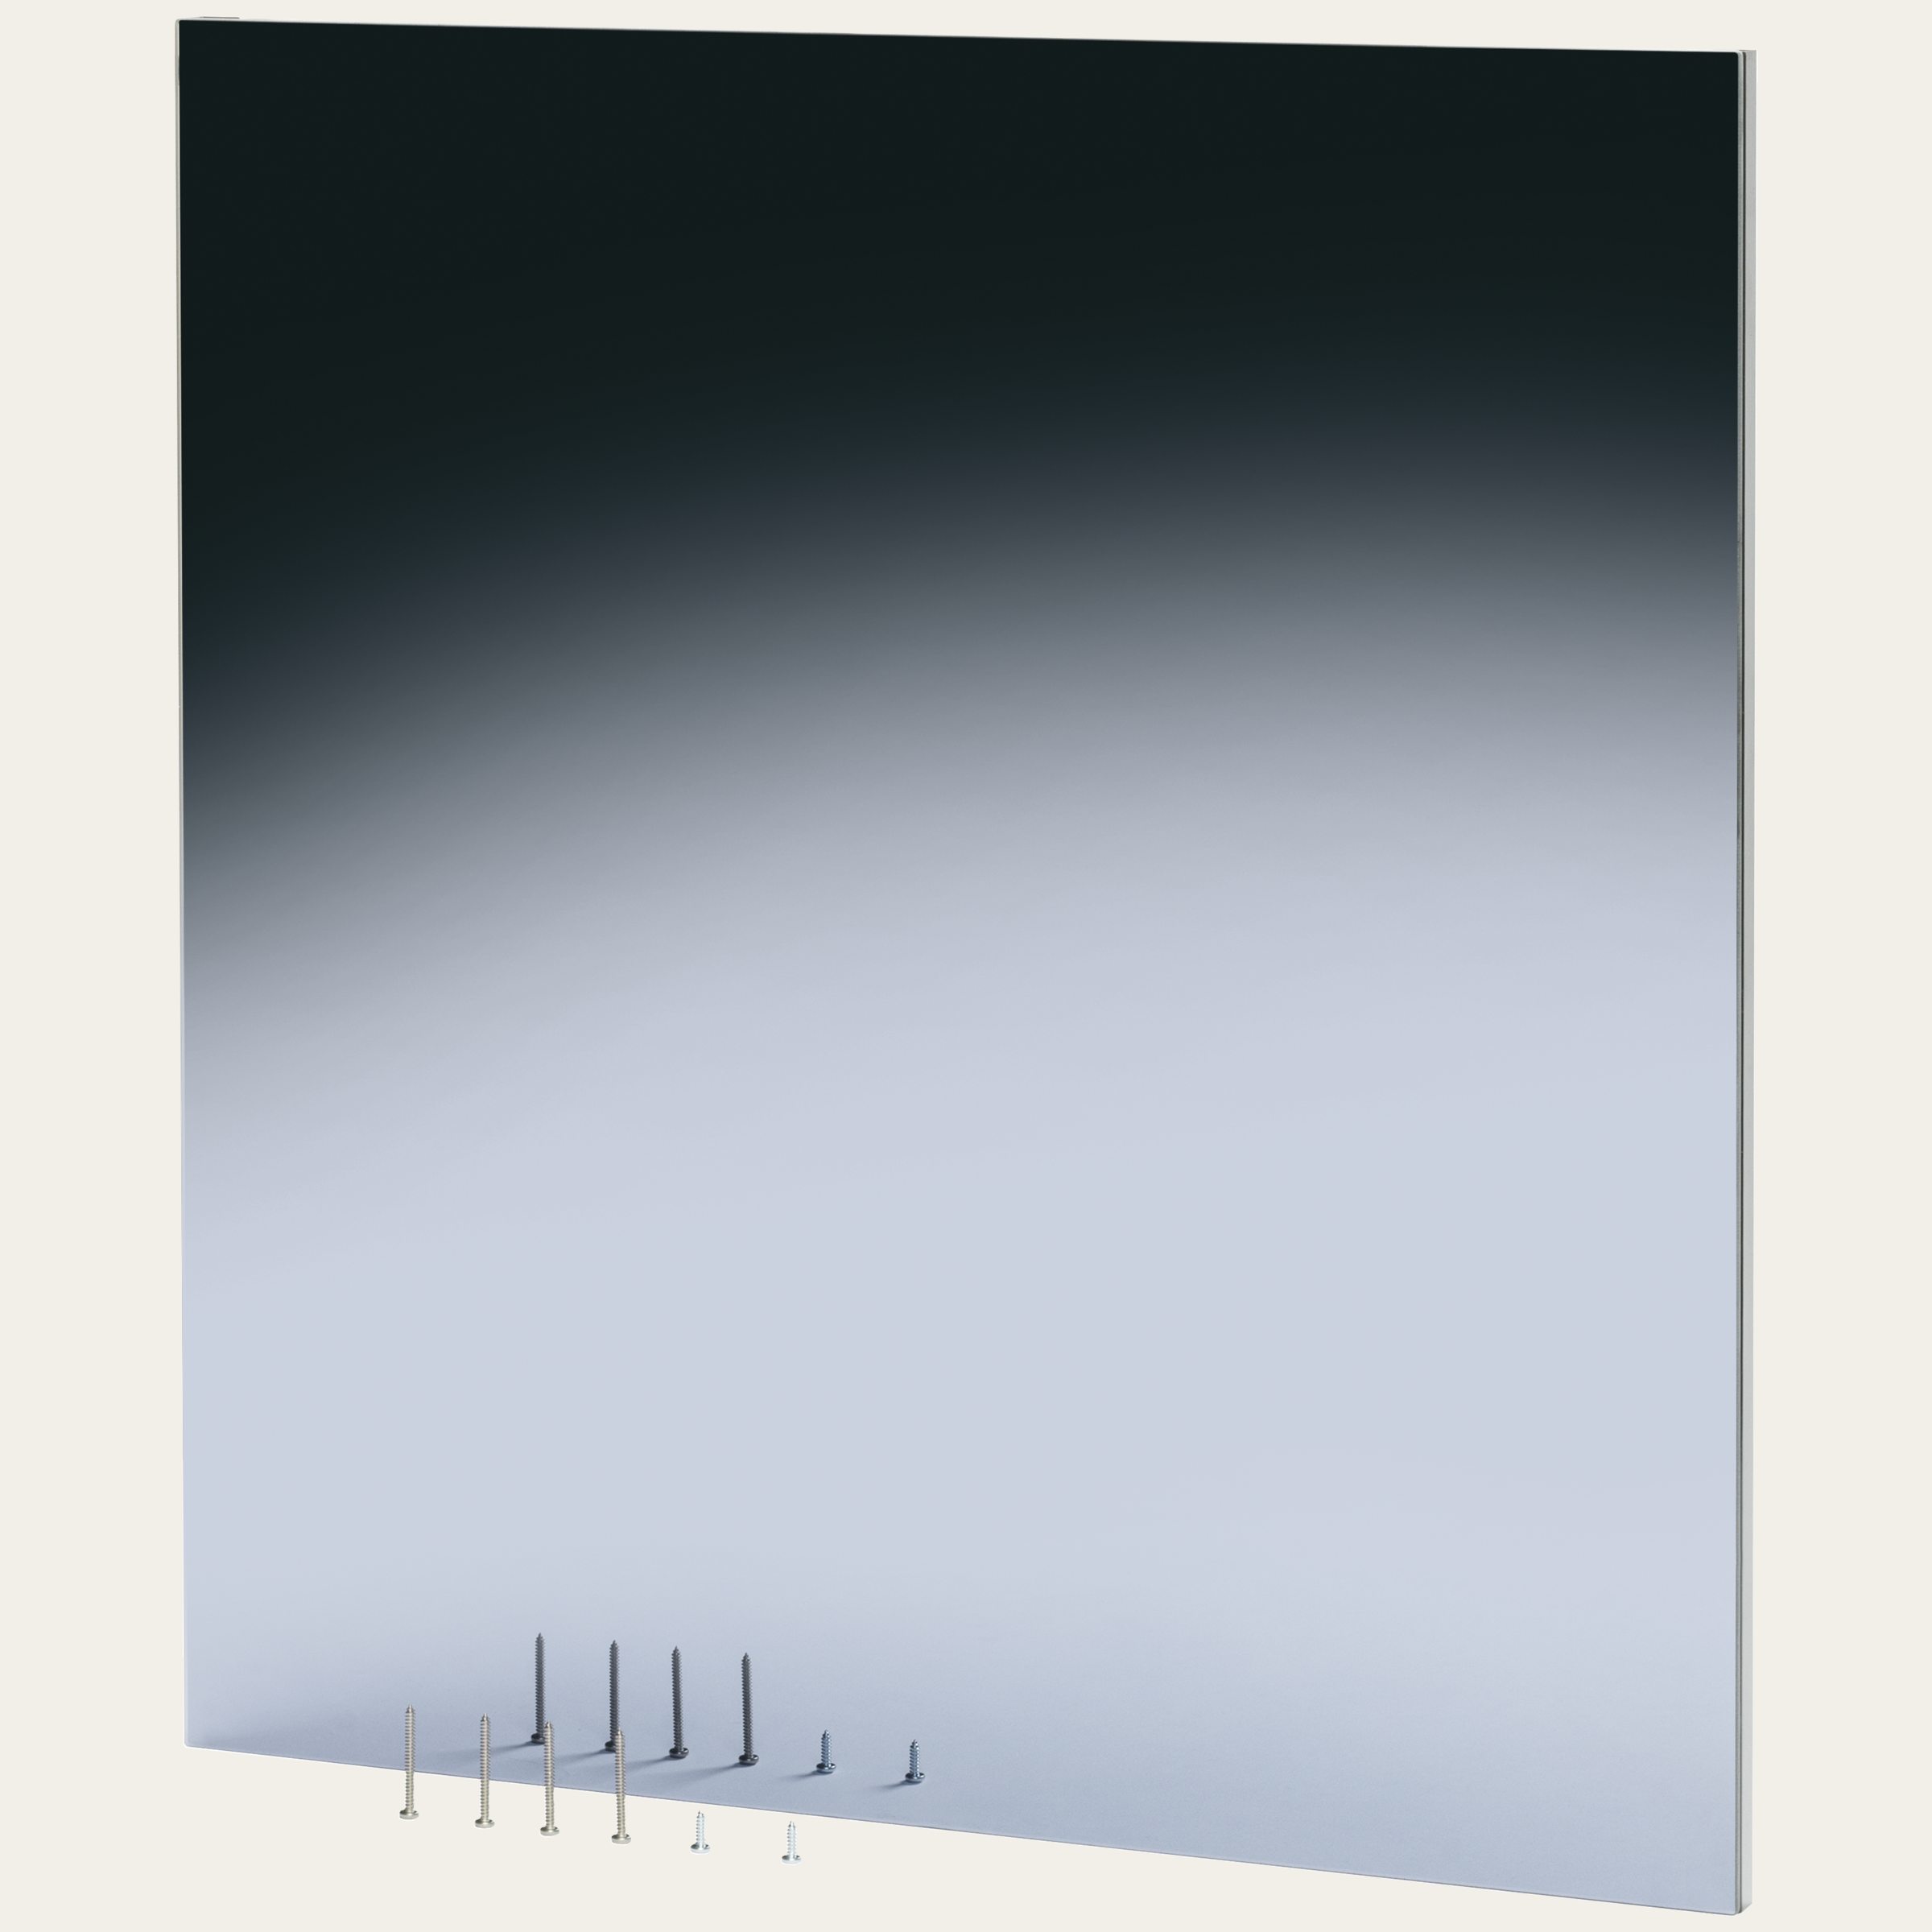 Dekorfront Spiegelglas Schwarz, Breite 60 cm